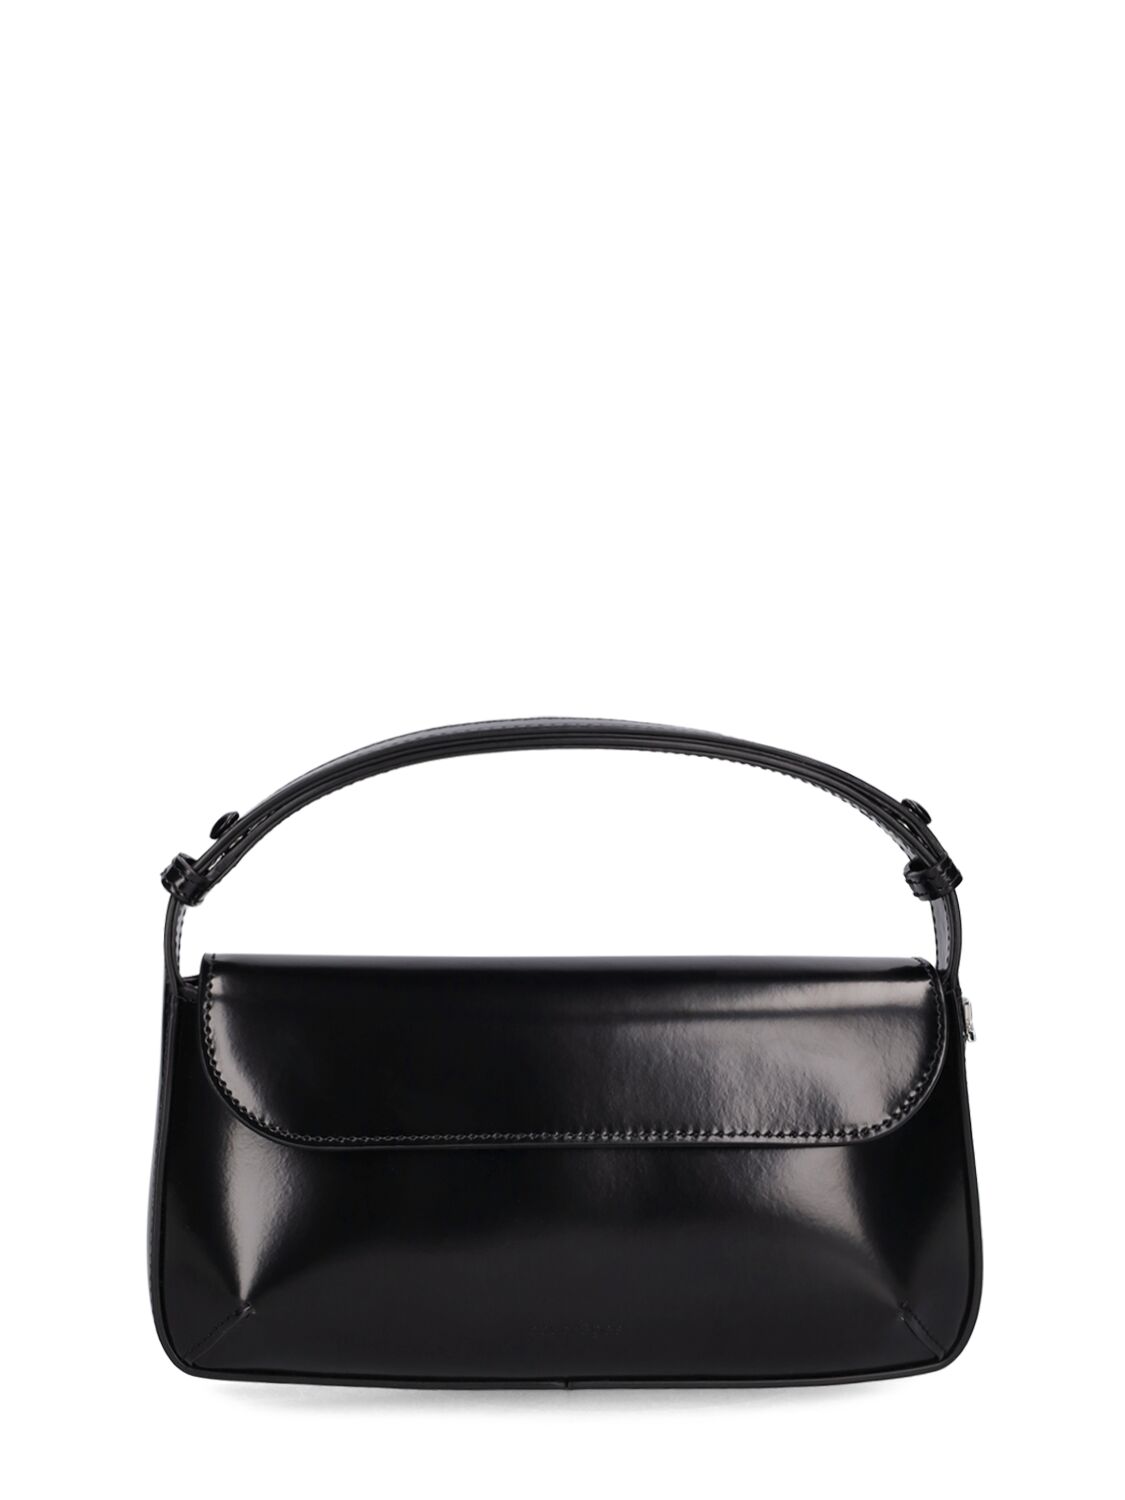 Courrèges Sleek Leather Shoulder Bag In Black